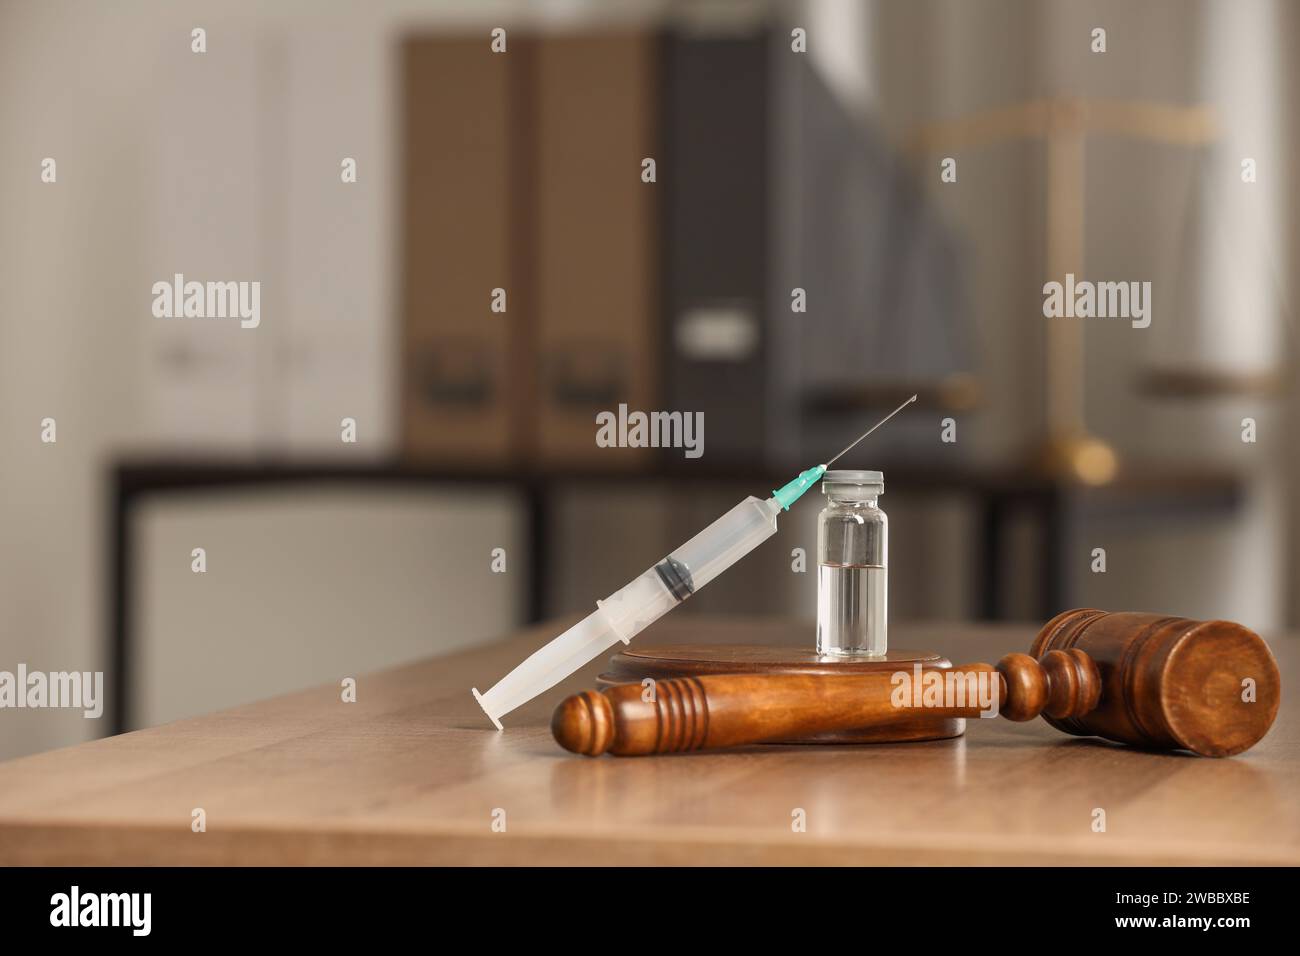 Concept de loi. Marteau, seringue et flacon en verre sur table en bois, espace pour le texte Banque D'Images